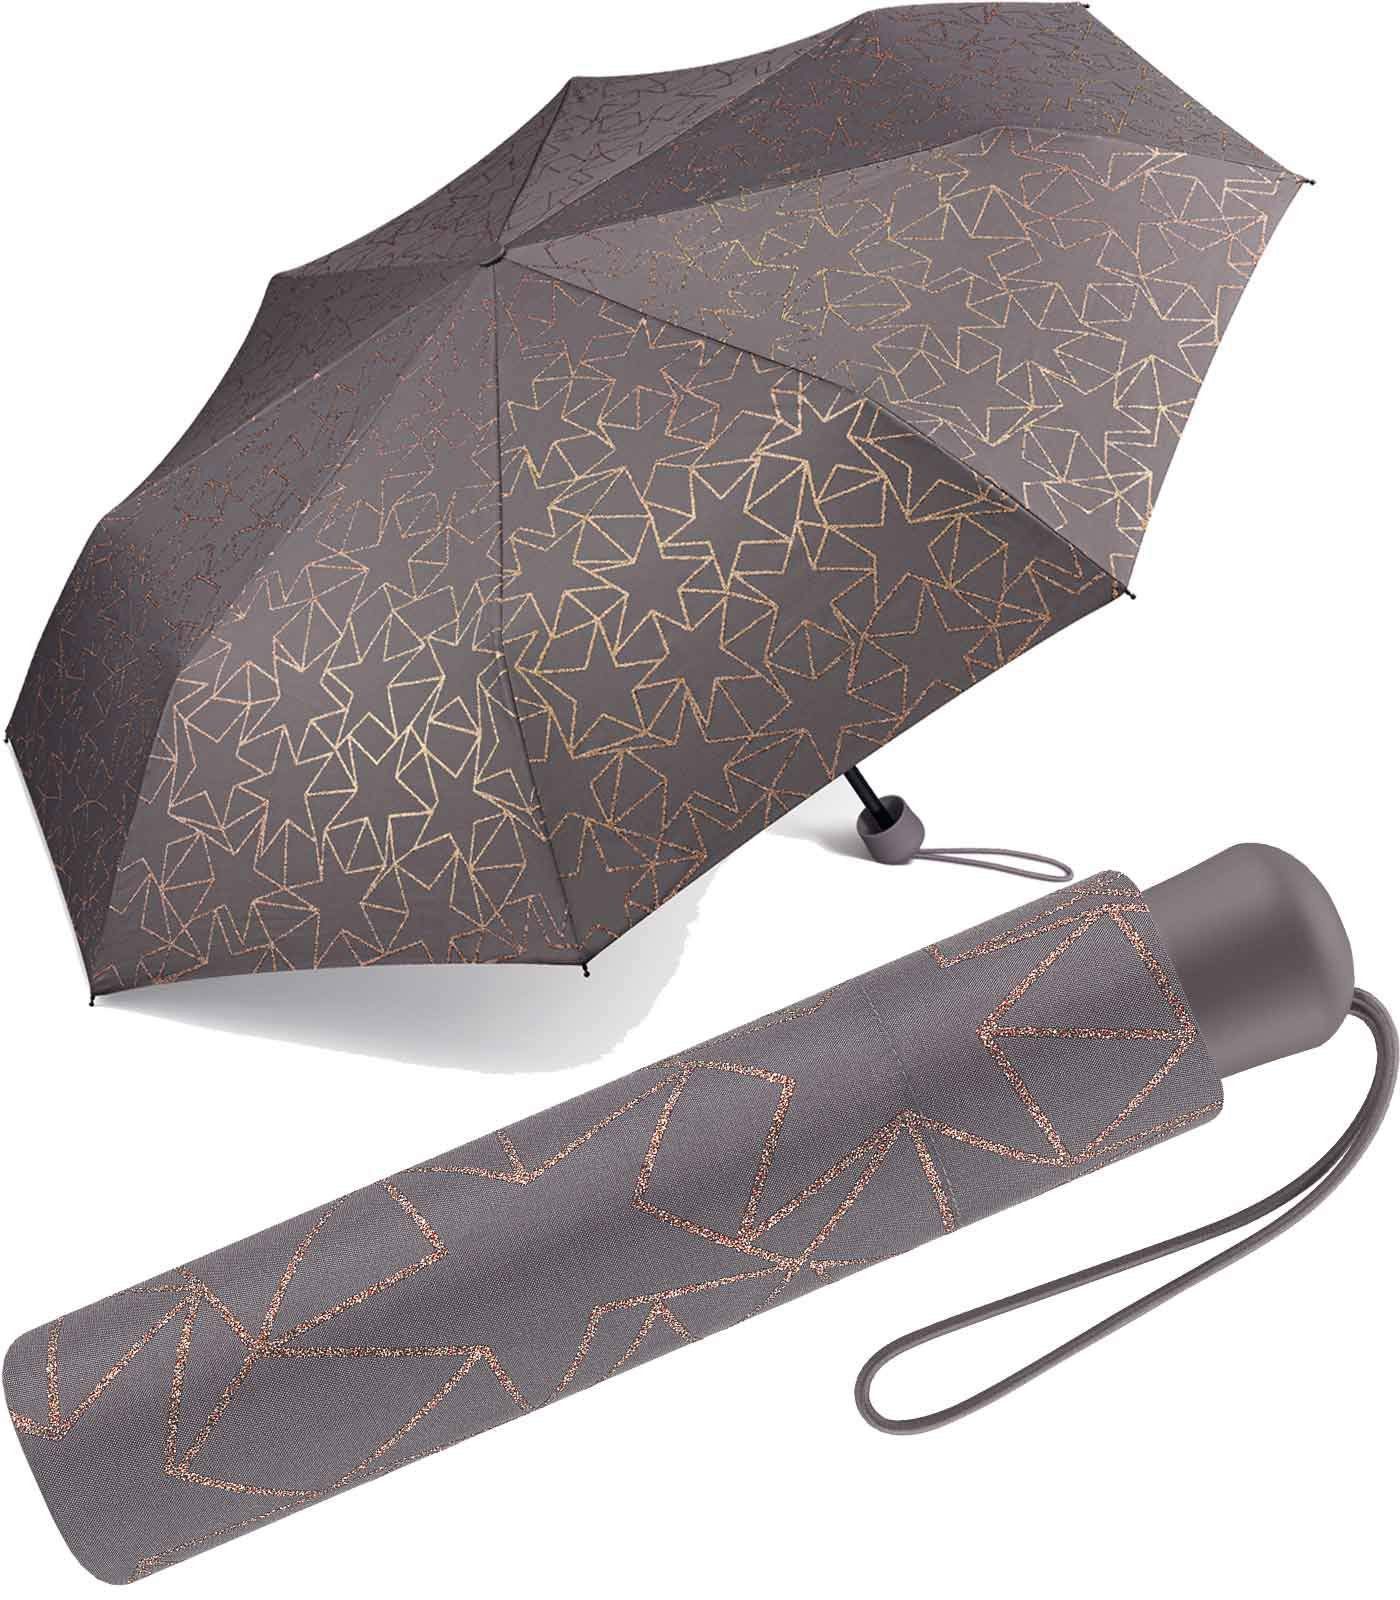 Esprit Taschenregenschirm schöner, kleiner Schirm für Damen - Glitter Stars, das besondere Design als Eyecatcher - excalibur braun